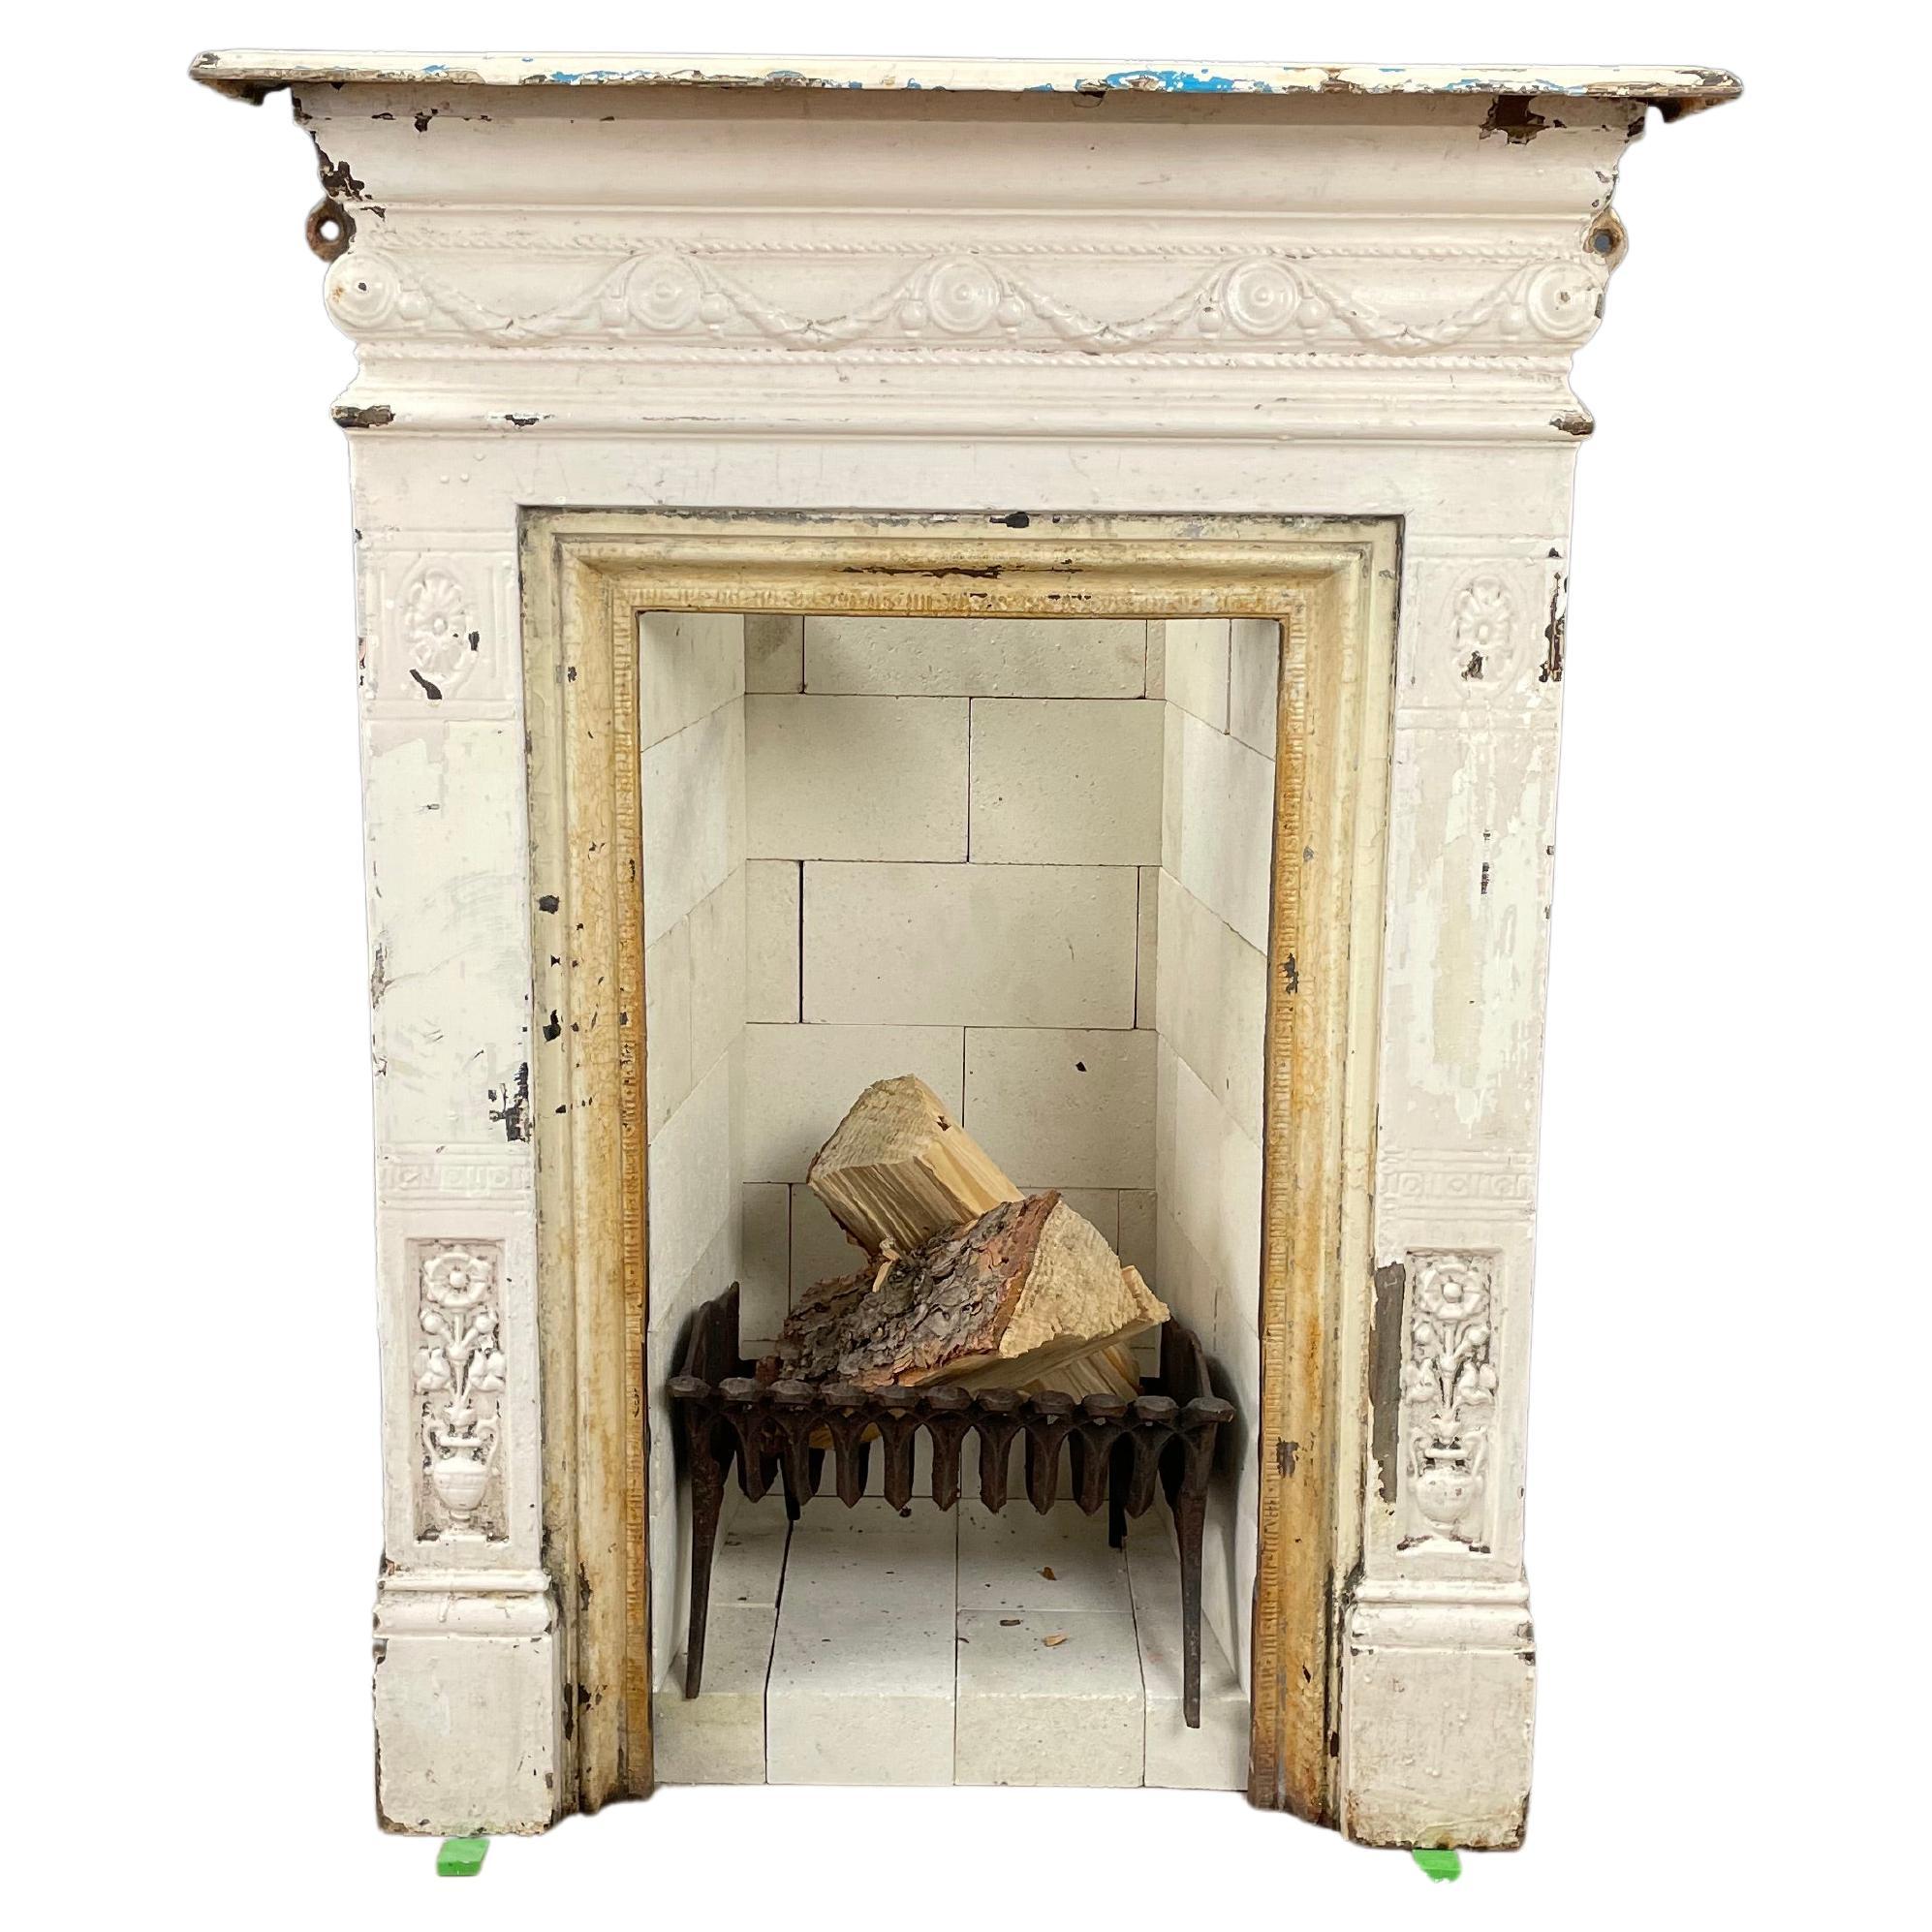 English Antique Cast Iron Fireplace Original Patina Including Refractory Bricks For Sale